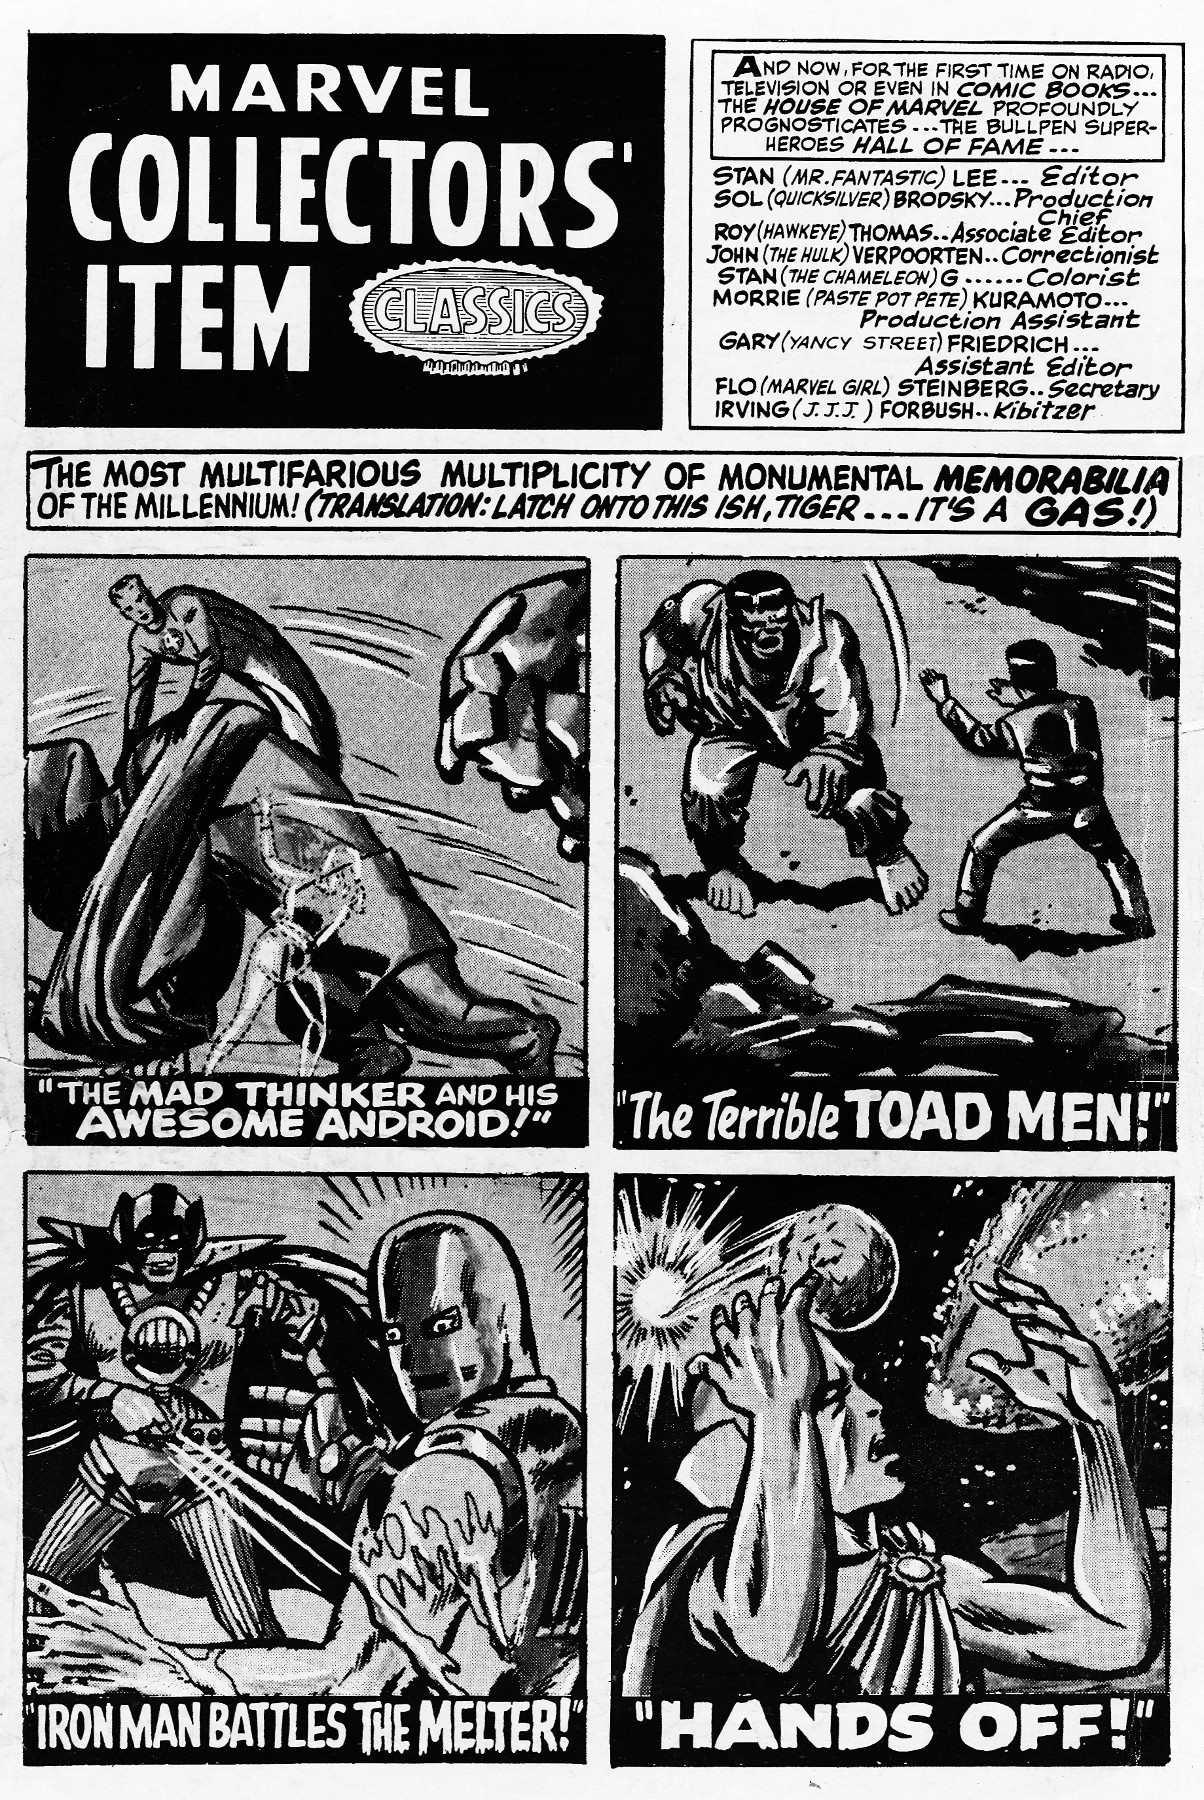 Read online Marvel Collectors' Item Classics comic -  Issue #10 - 2